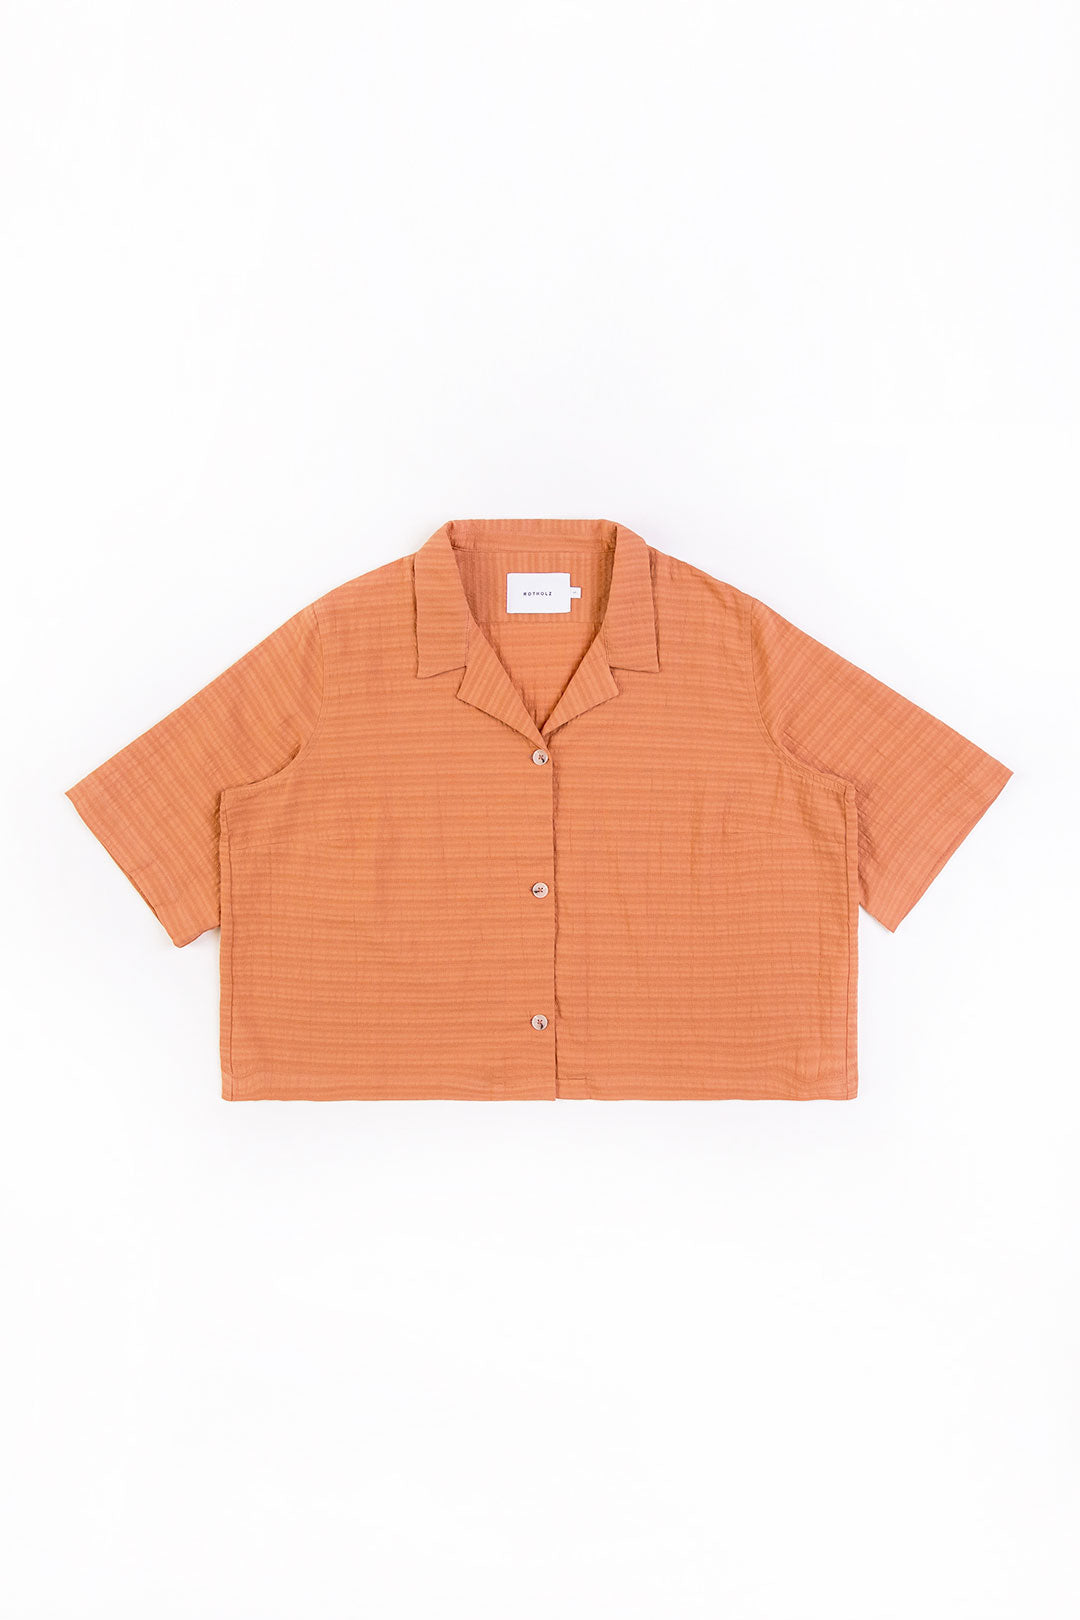 Orangenes, kurzes Bowling-Hemd aus 100% Bio-Baumwolle von Rotholz